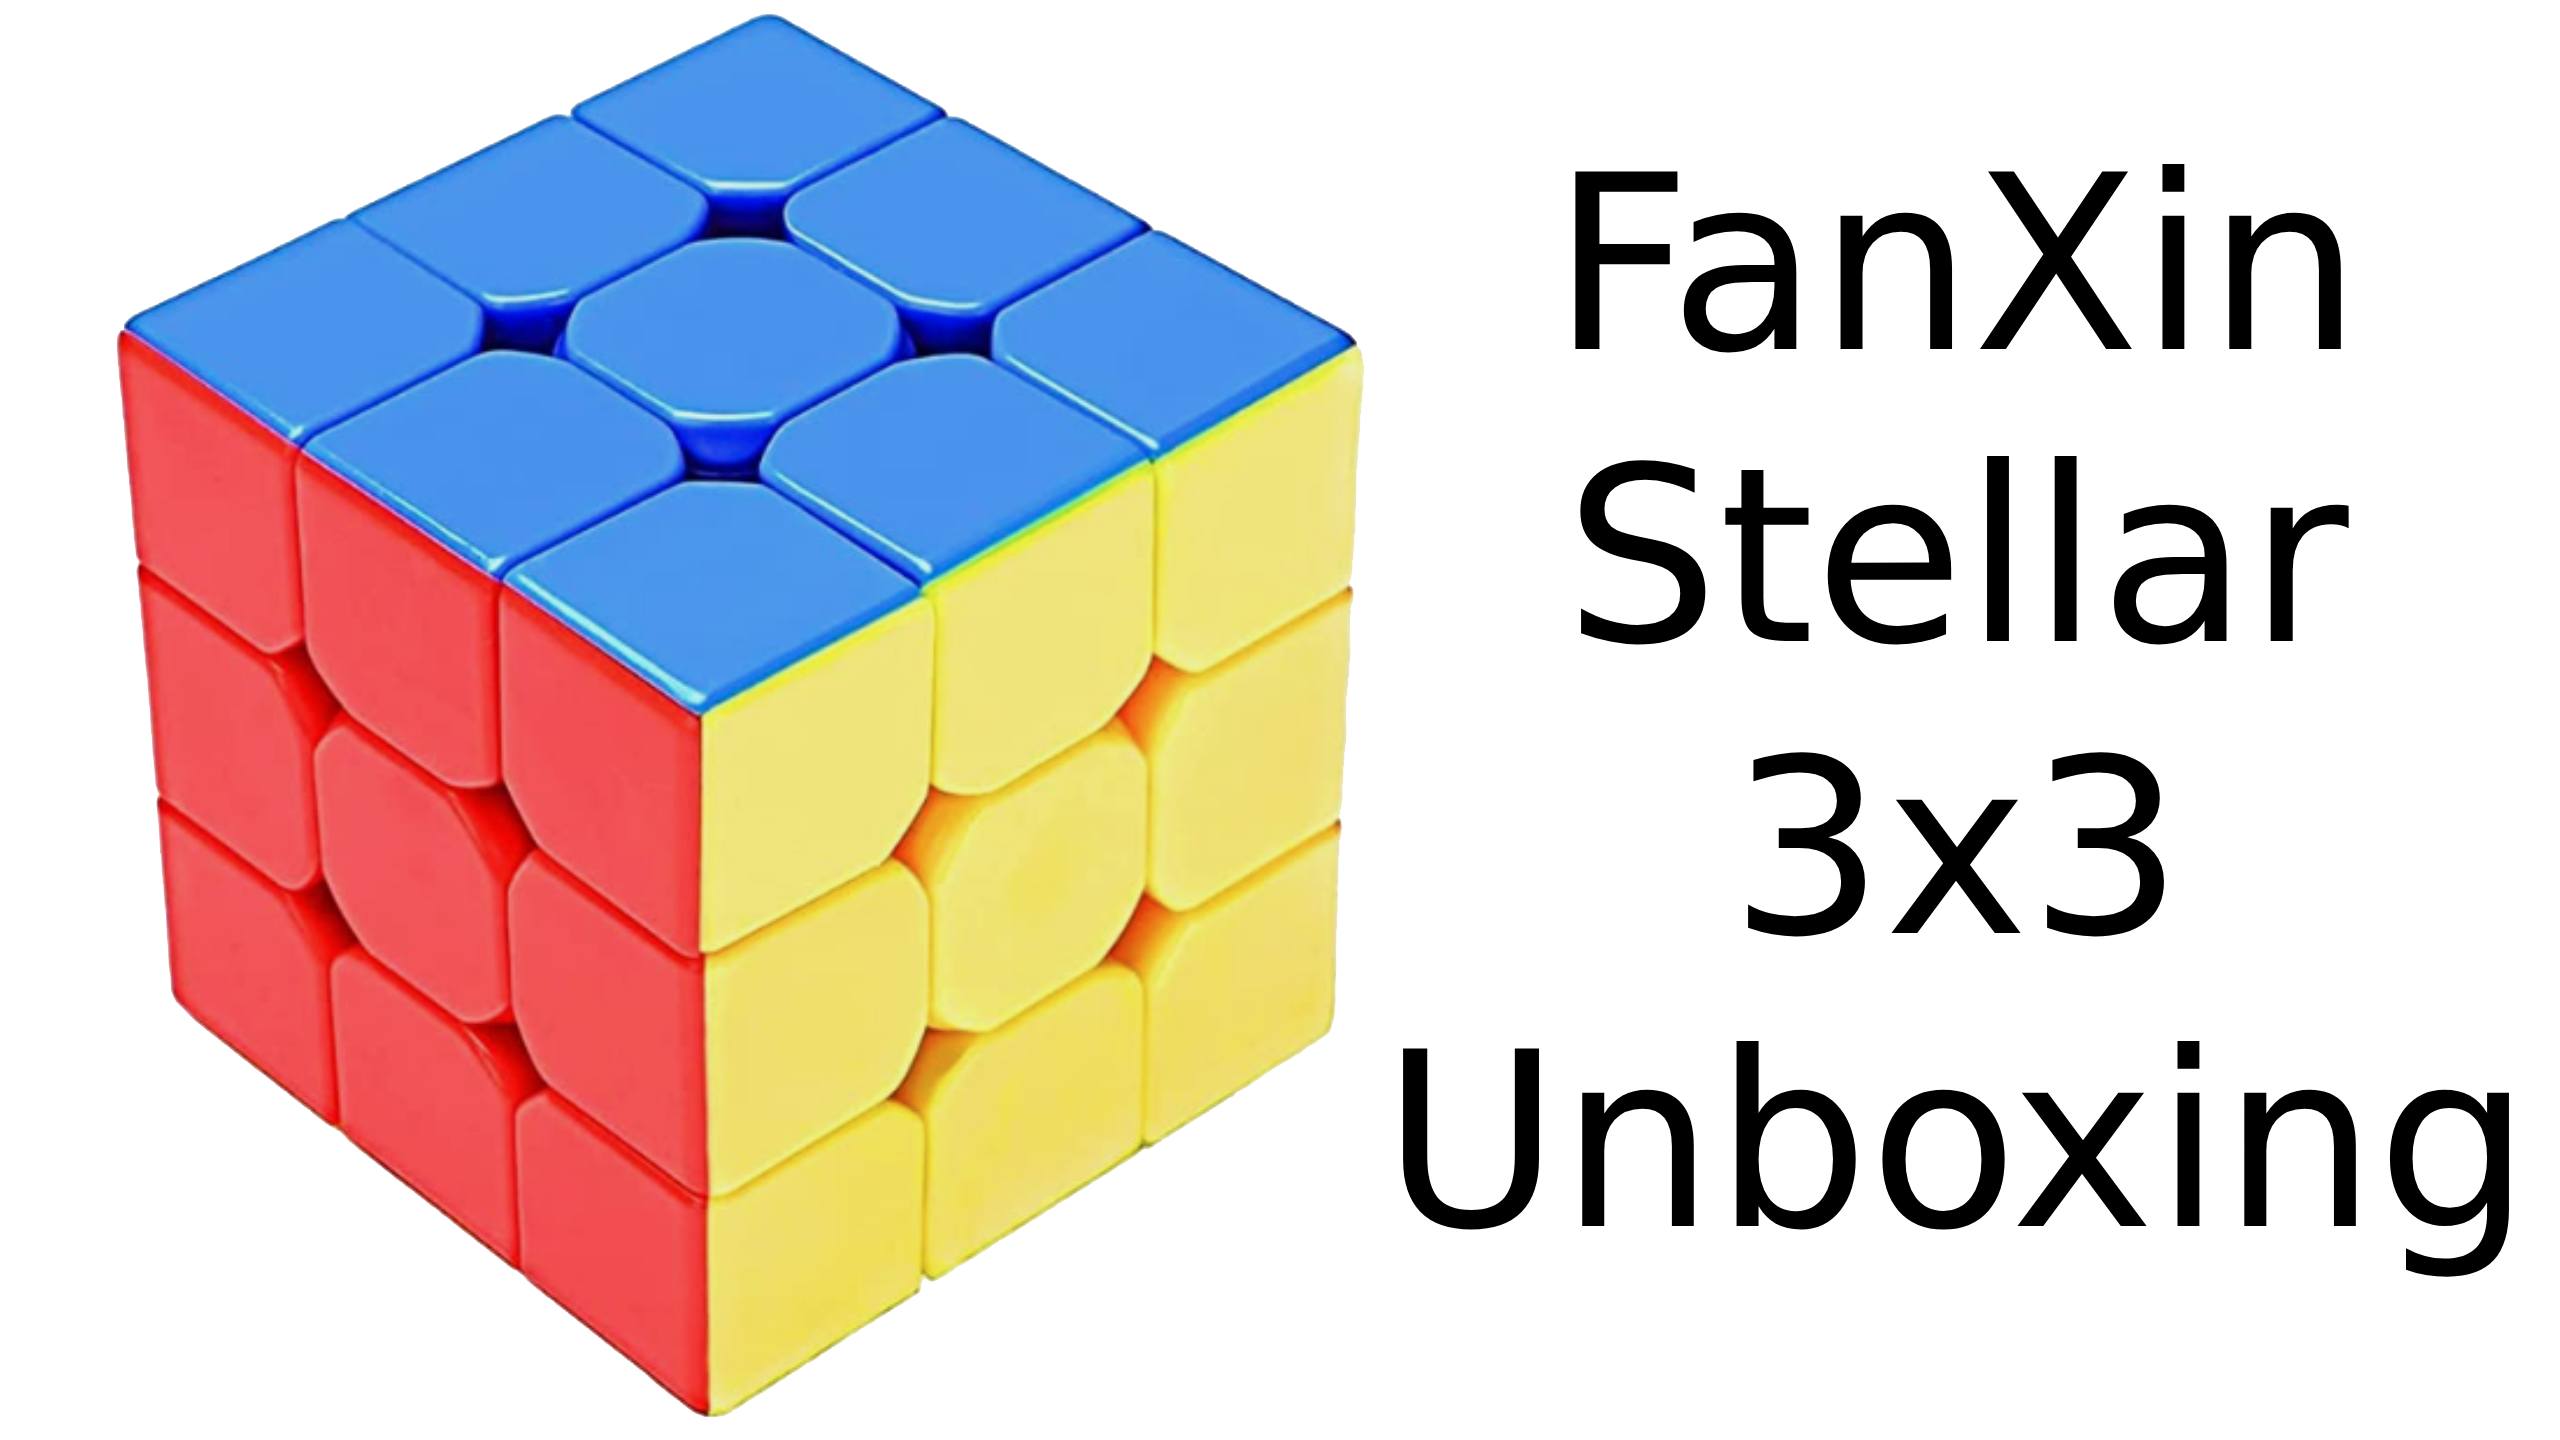 Fanxin Stellar 3x3x3 unboxing | The best £5 3x3x3 cube! + I got a last layer skip!